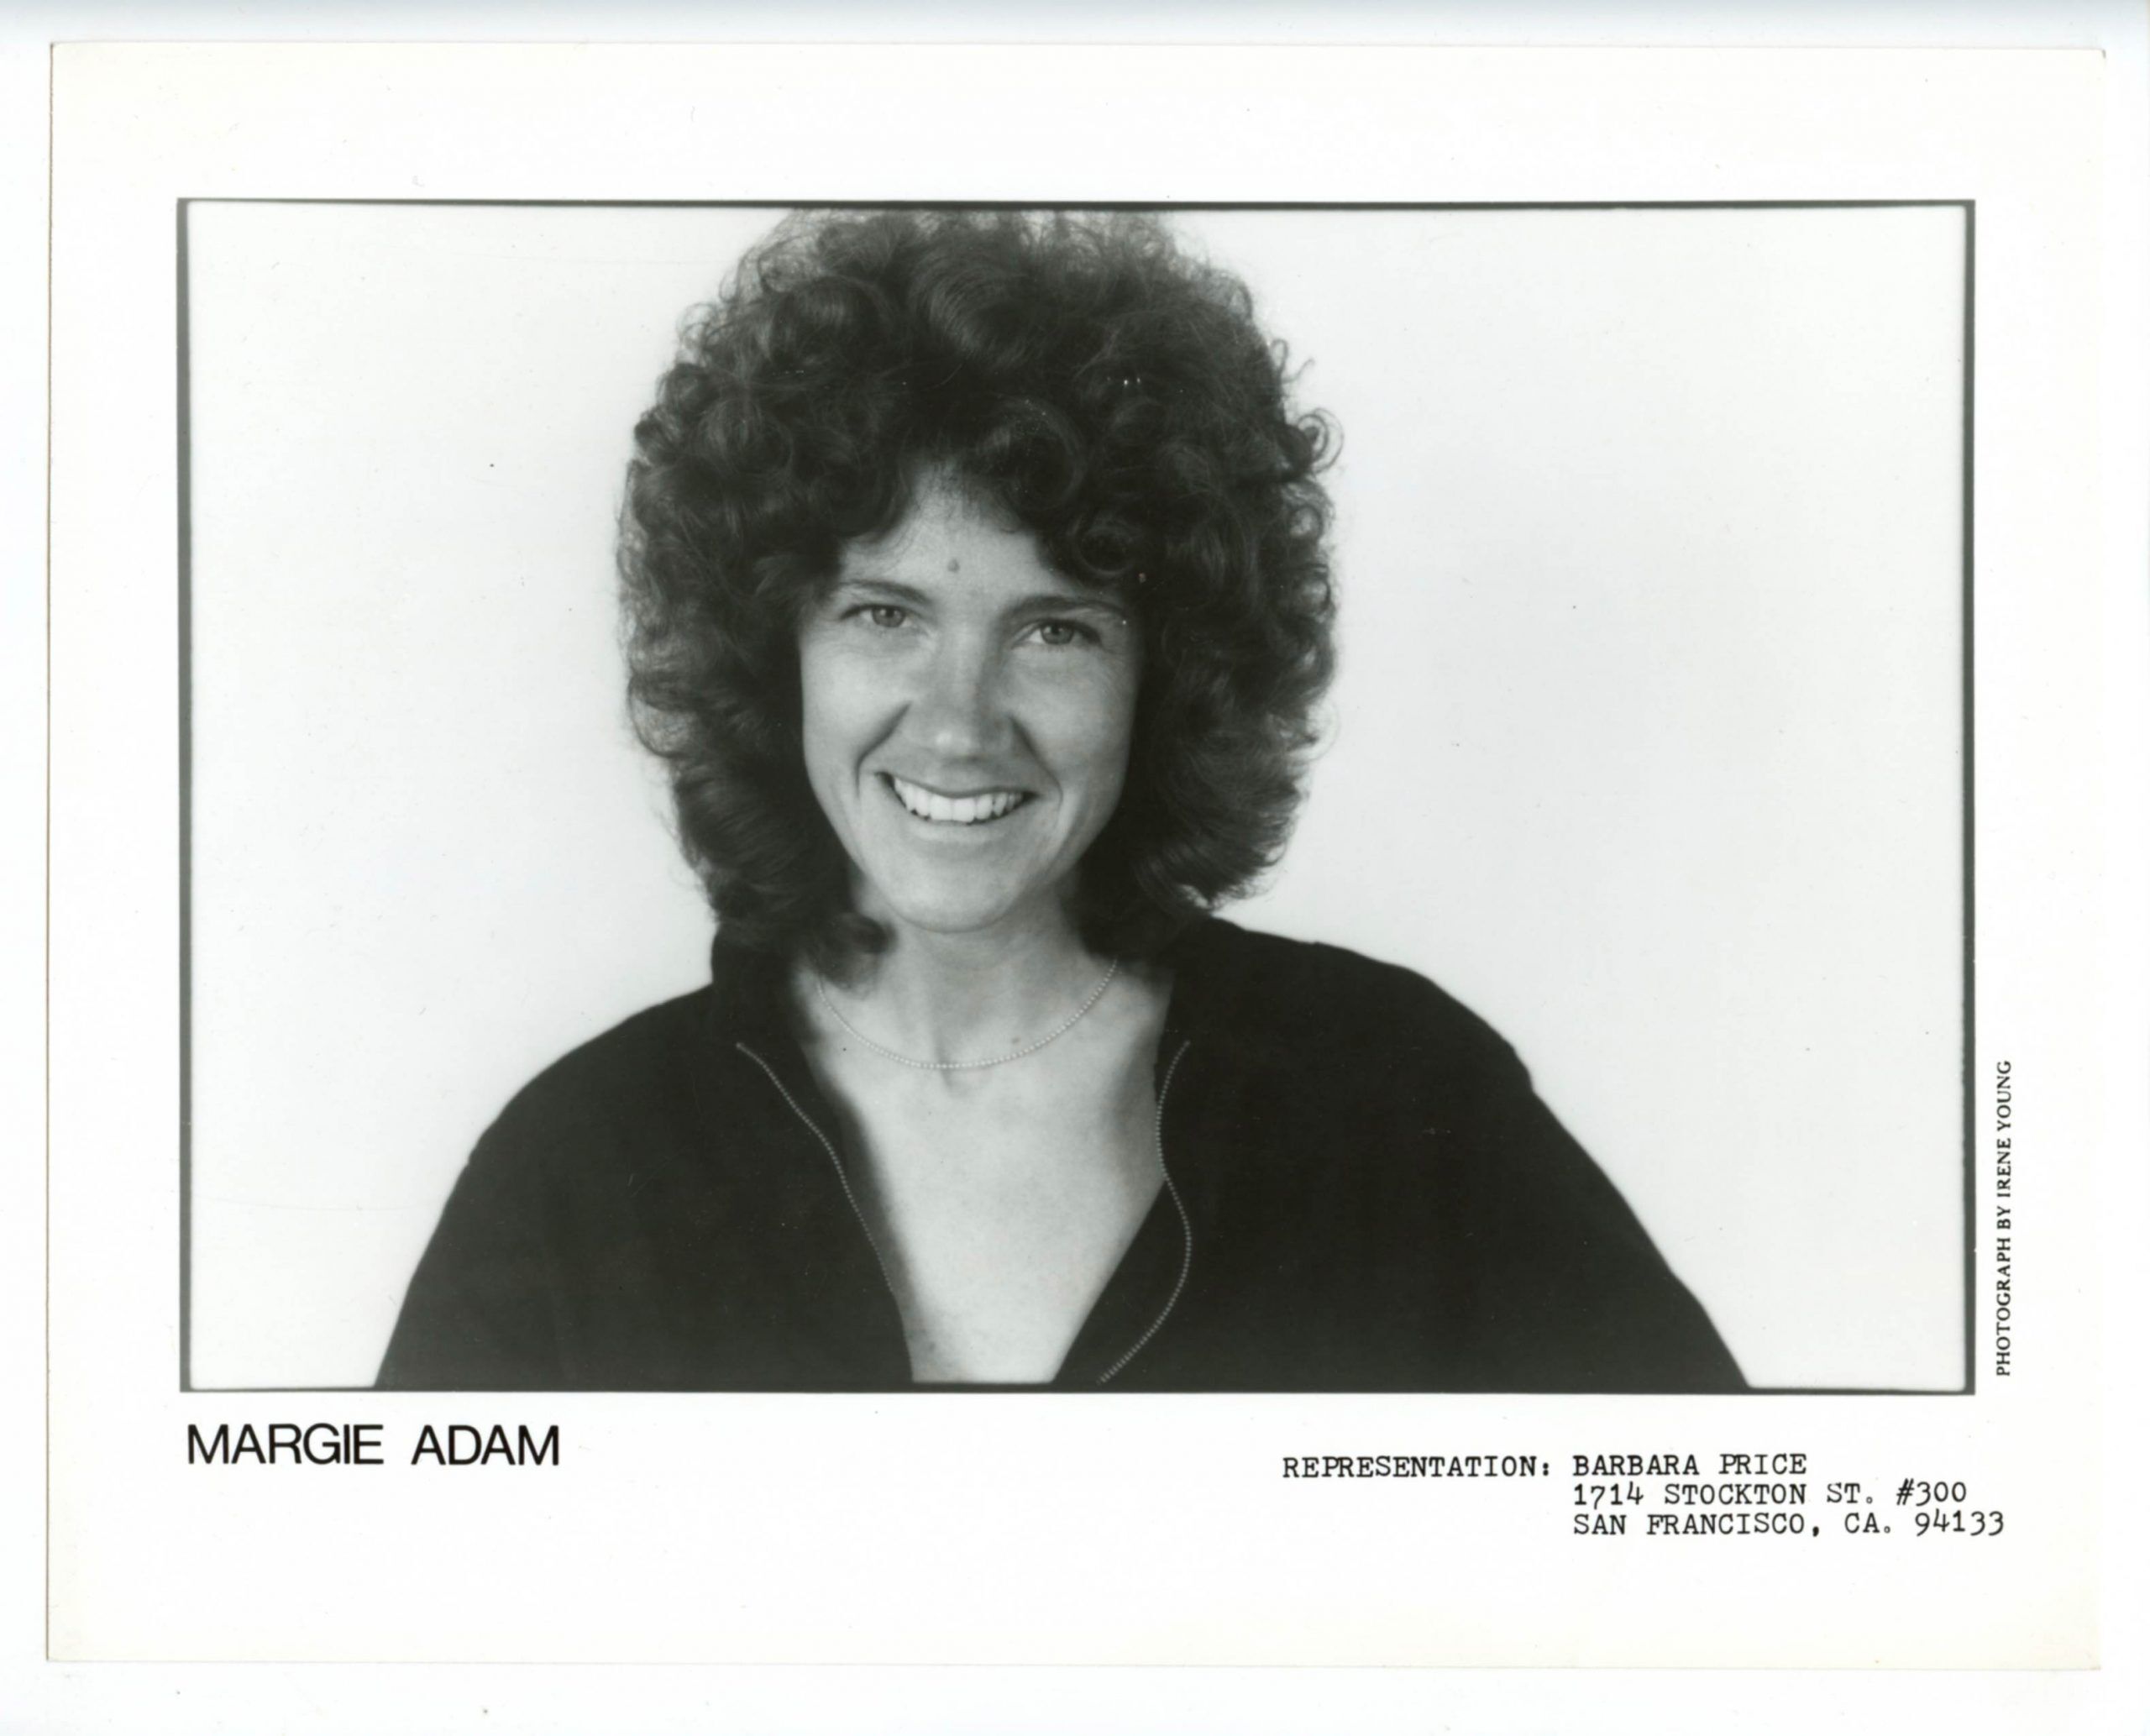 Margie Adam Photo 1970s Publicity Promotion